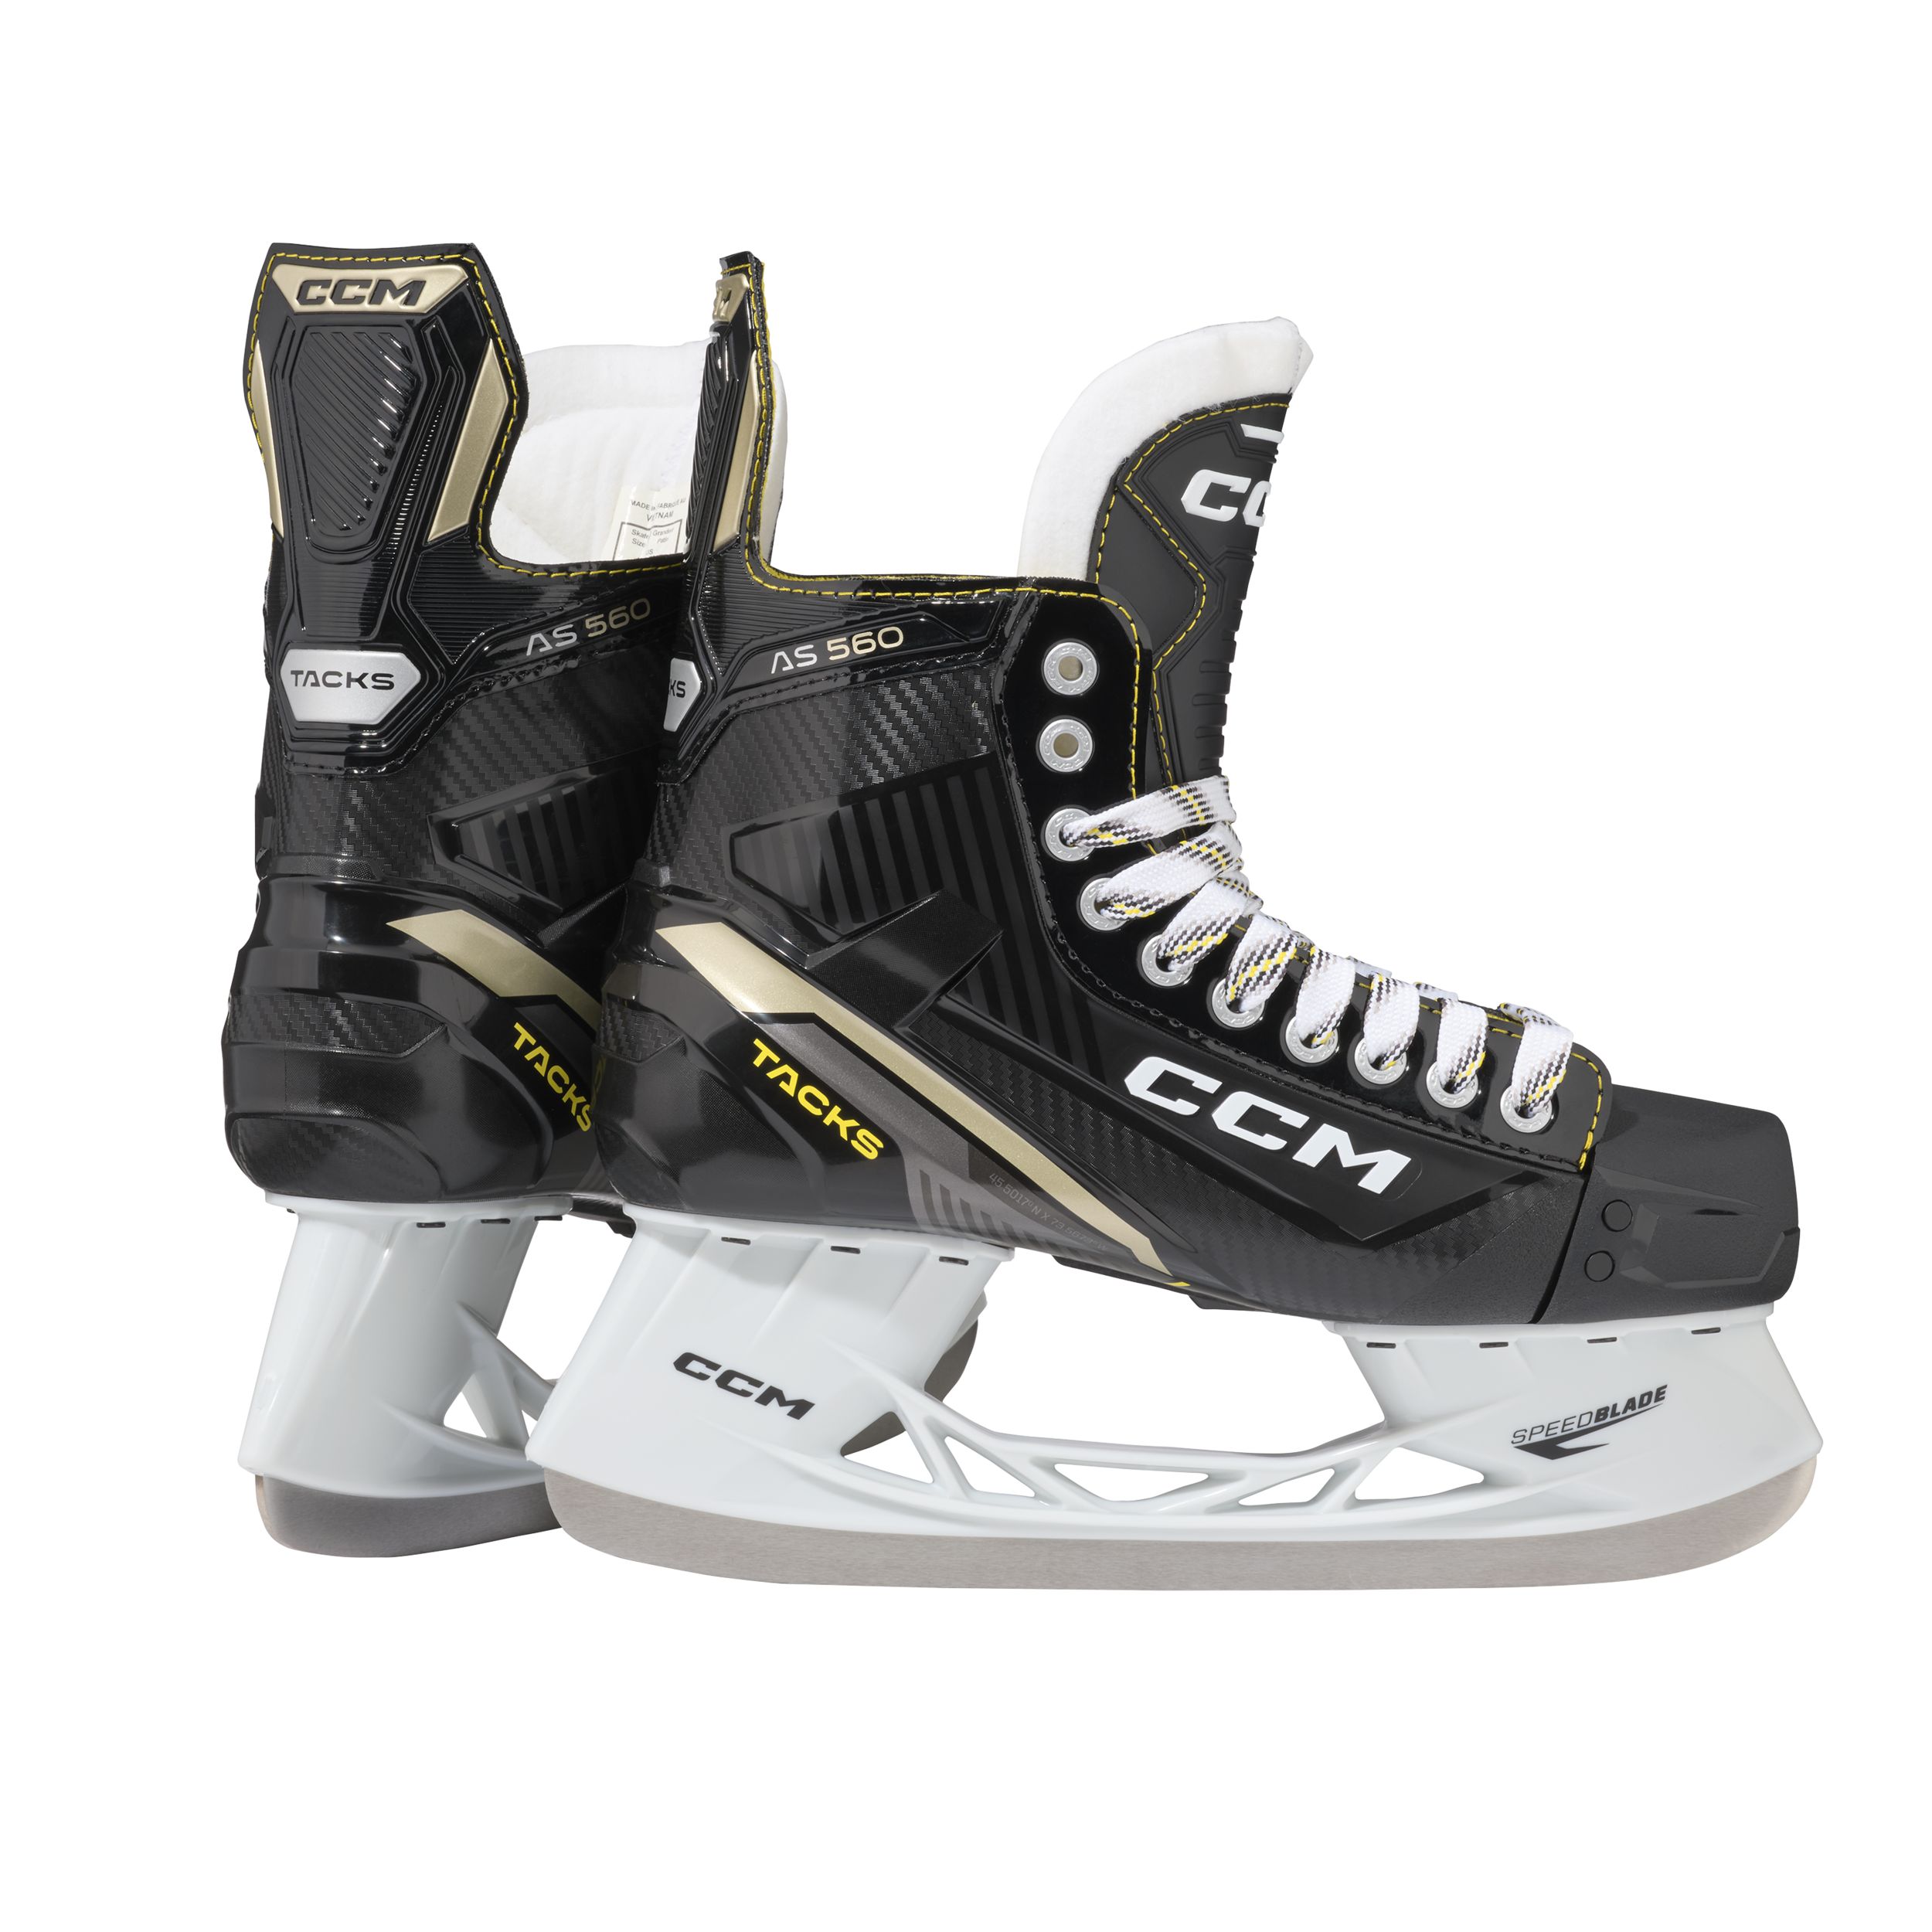 Image of CCM Tacks AS 560 Senior Hockey Skates